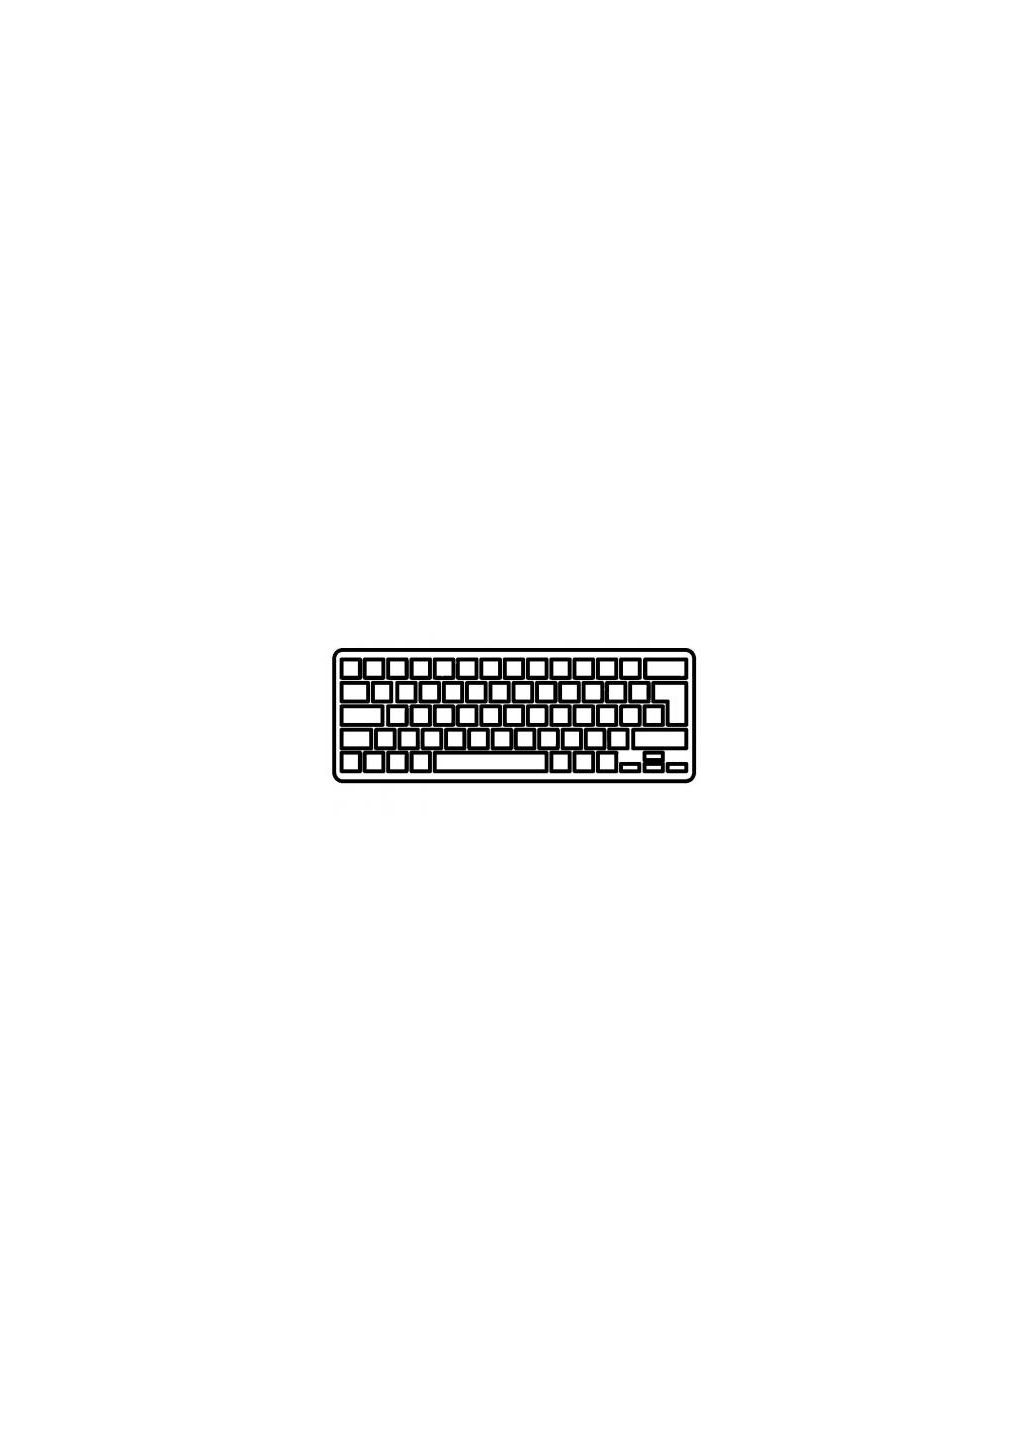 Клавиатура ноутбука Air 11.6 A1370,A1465 black,wo/frame,backlight RU/US (A46037) Apple air 11.6 a1370, a1465 black, wo/frame, backlight ru/u (276707520)